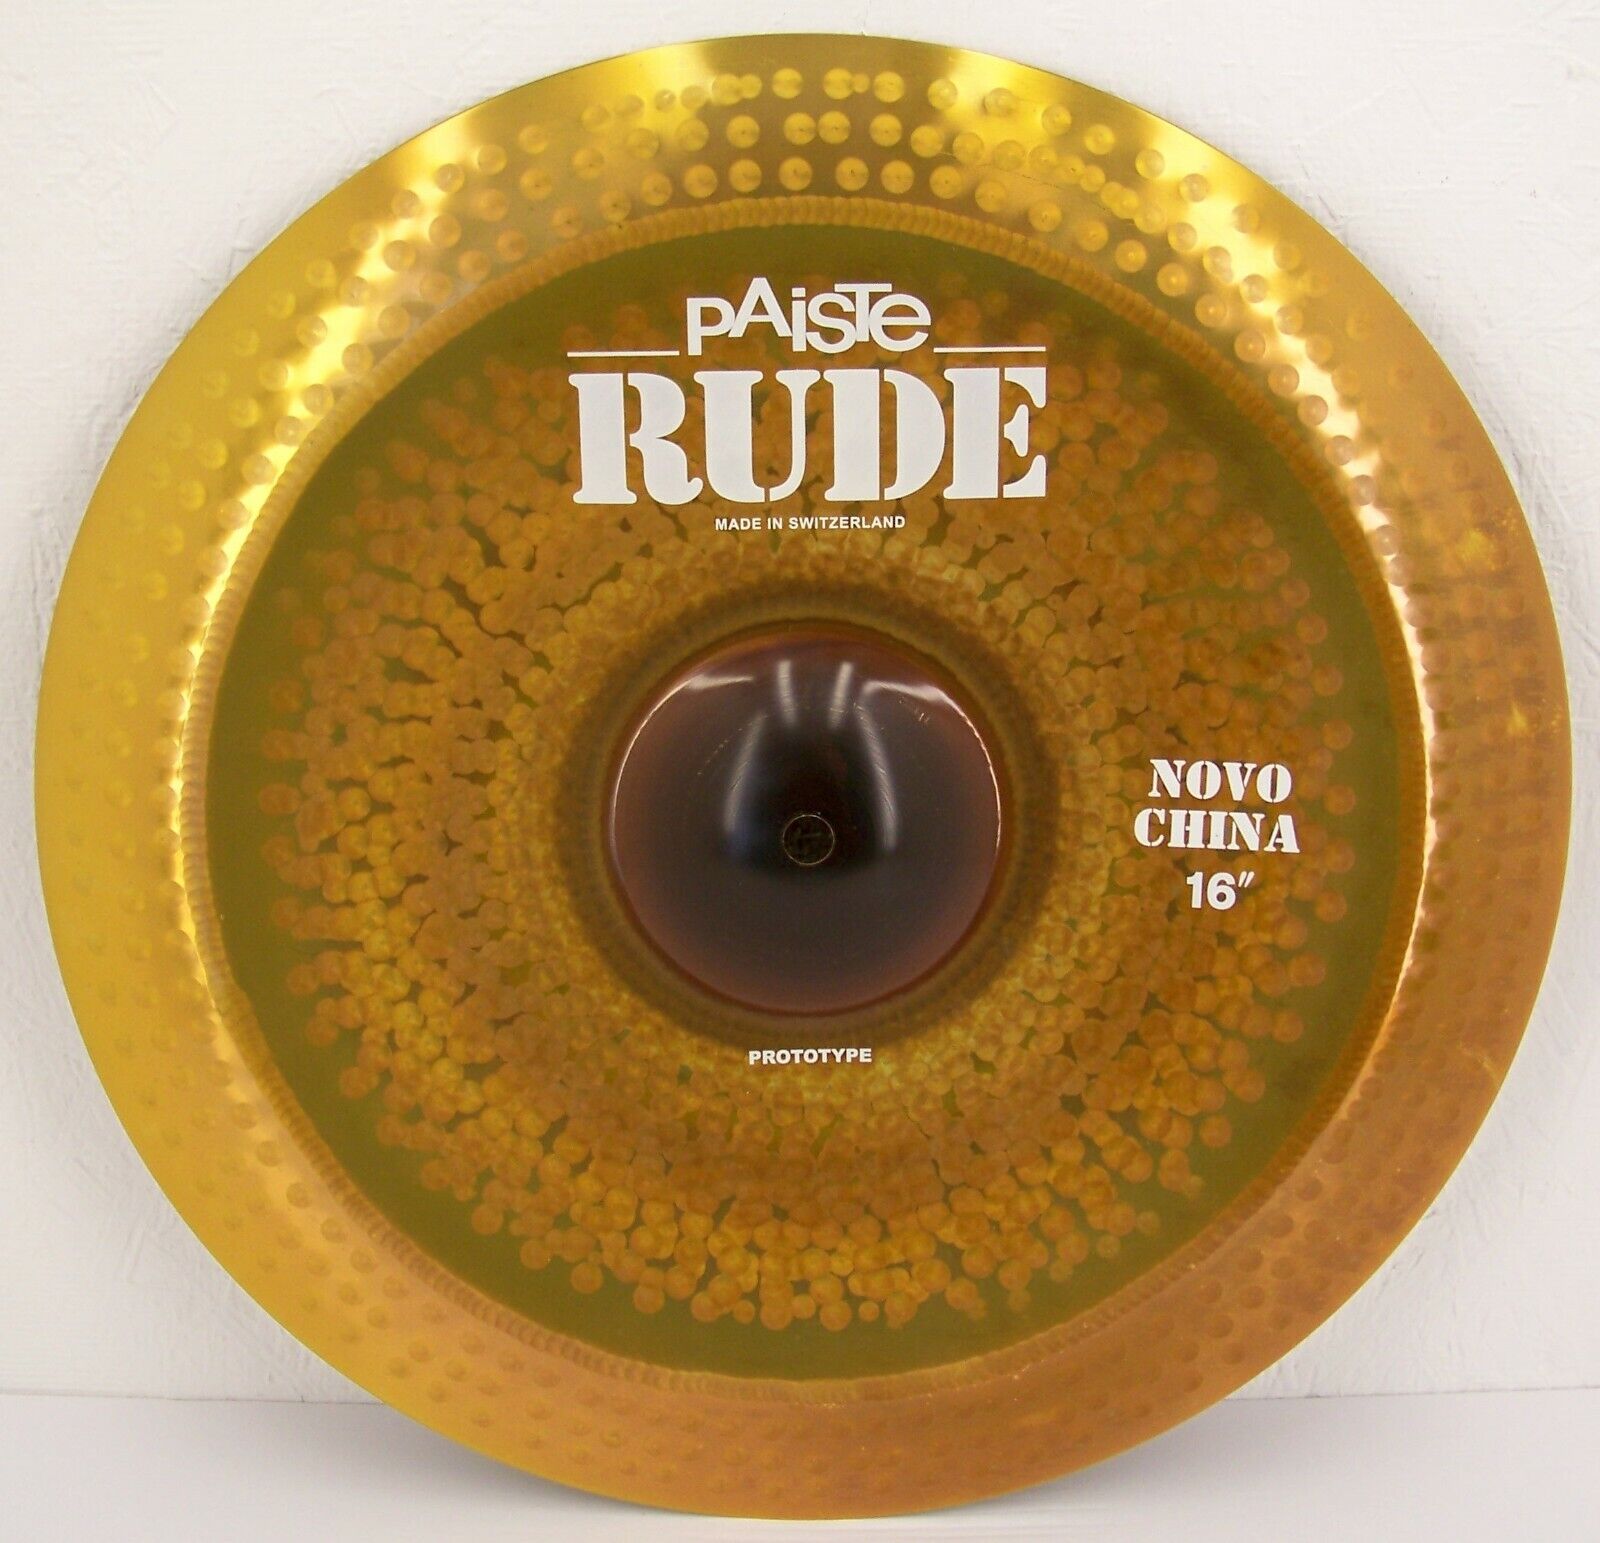 Paiste Rude 16" Novo China Cymbal/new With Warranty/model # Cy0001122516/custom!